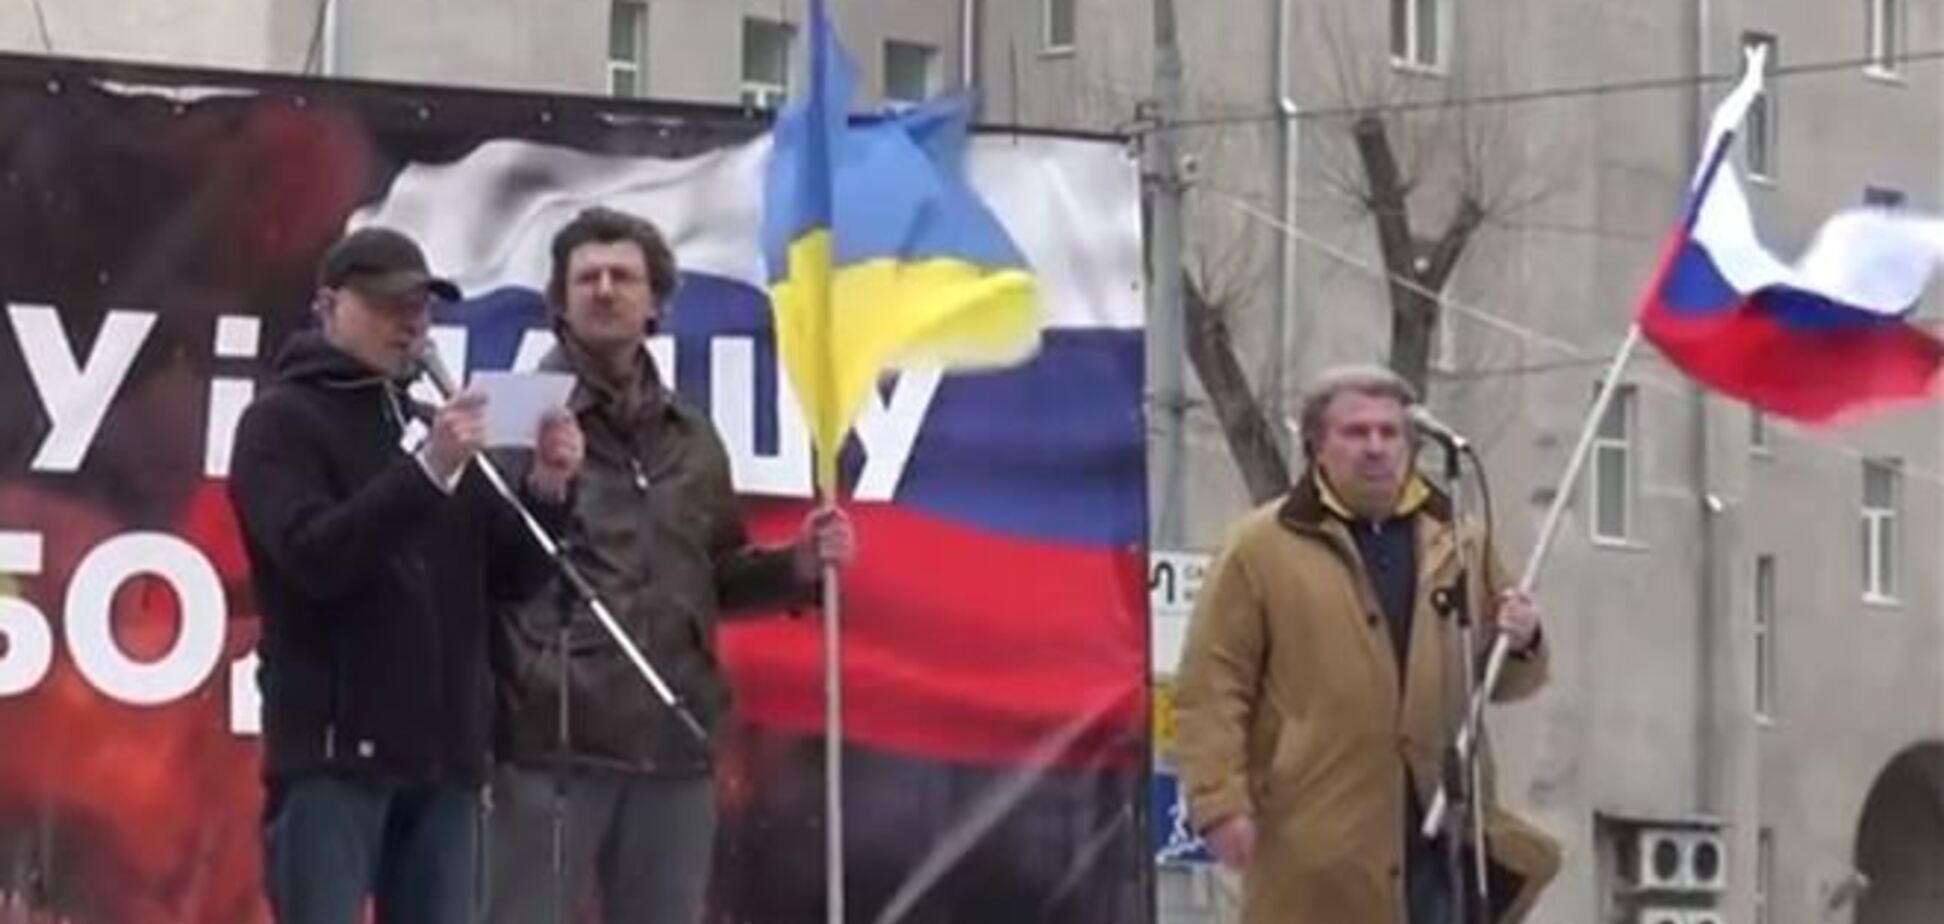 Користувачі мережі побачили 'містичний знак' в здутому прапорі Росії